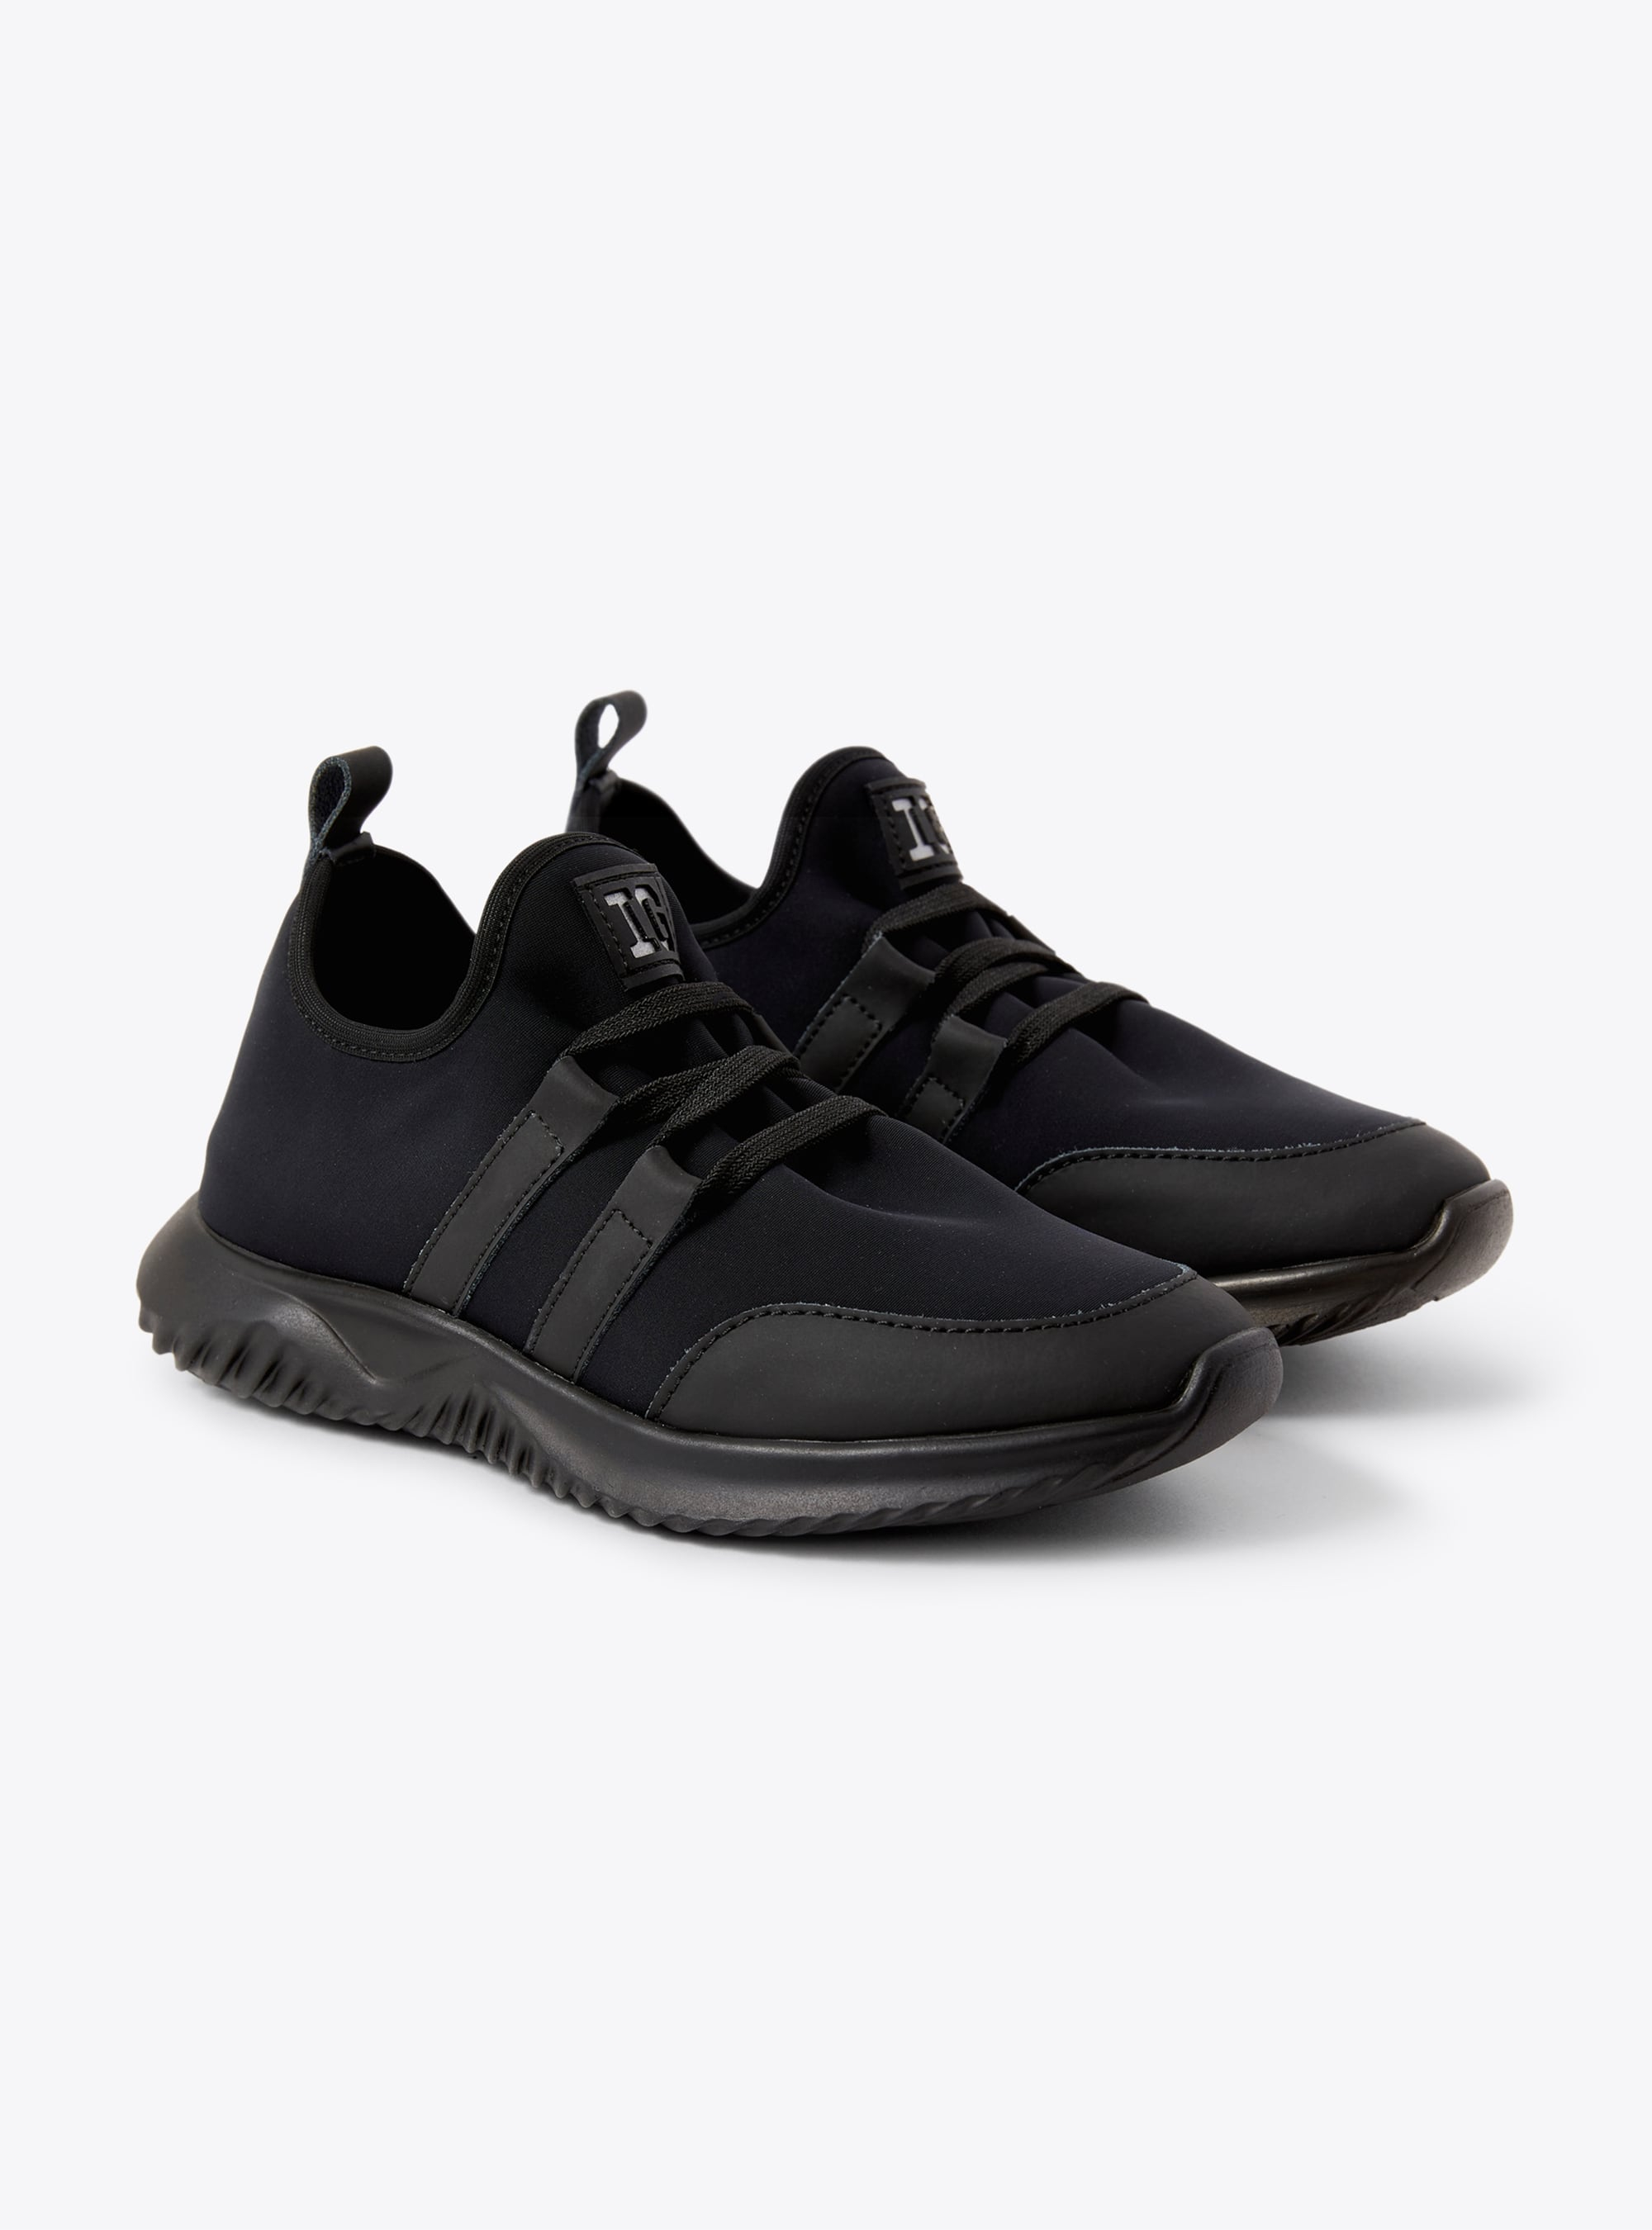 Sneakers en néoprène noir avec cordon - Chaussures - Il Gufo